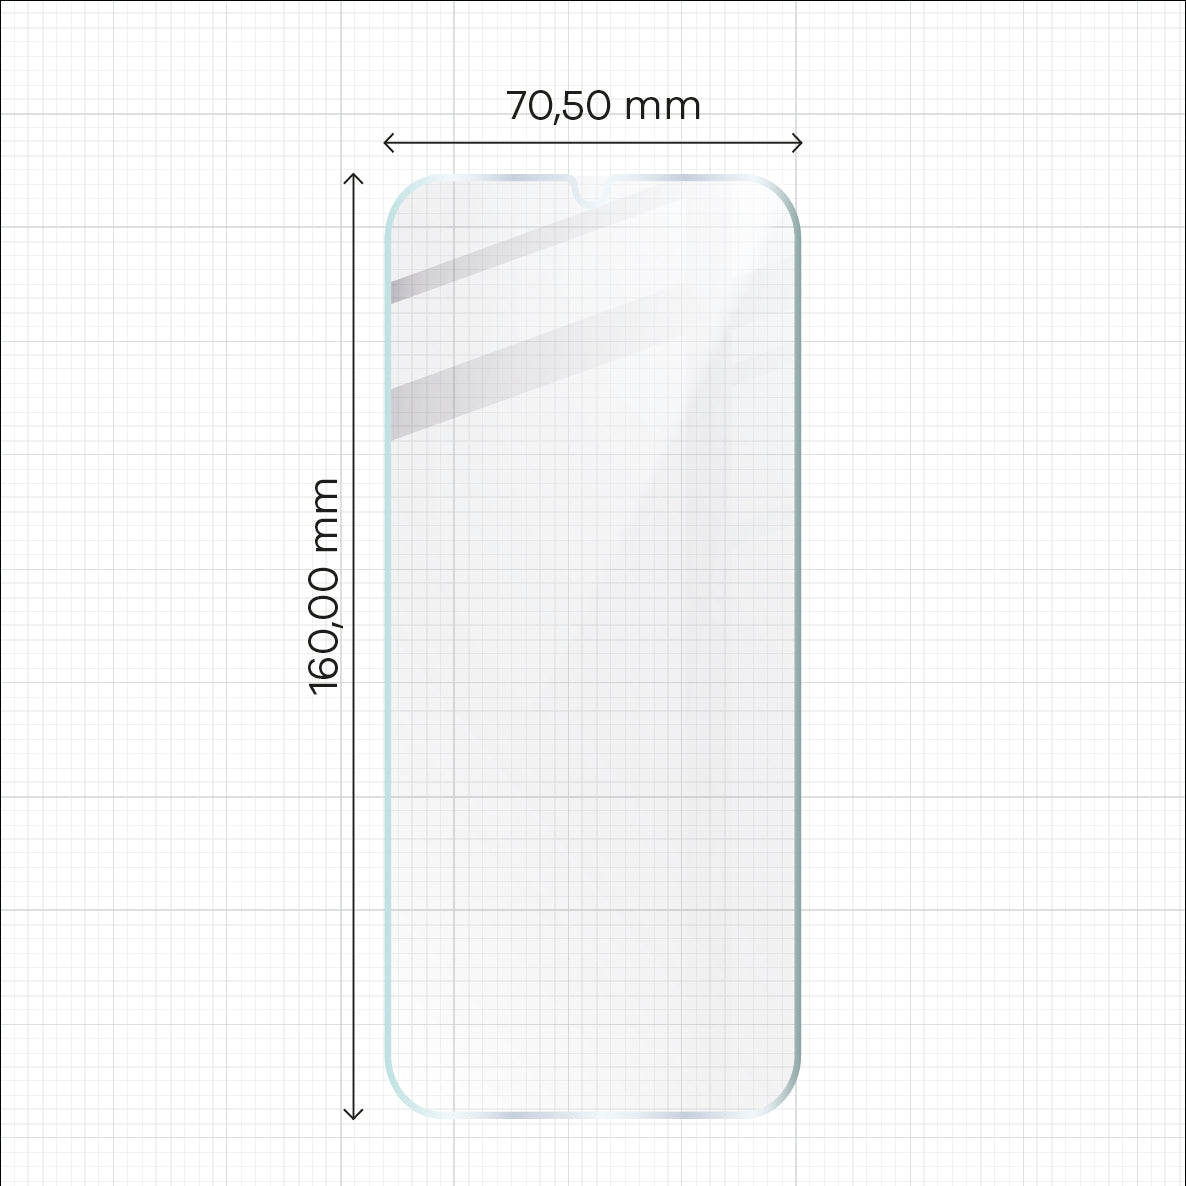 Gehärtetes Glas Bizon Glass Clear 2 - 3 Stück + Kameraschutz für Galaxy A14 4G/5G, M14